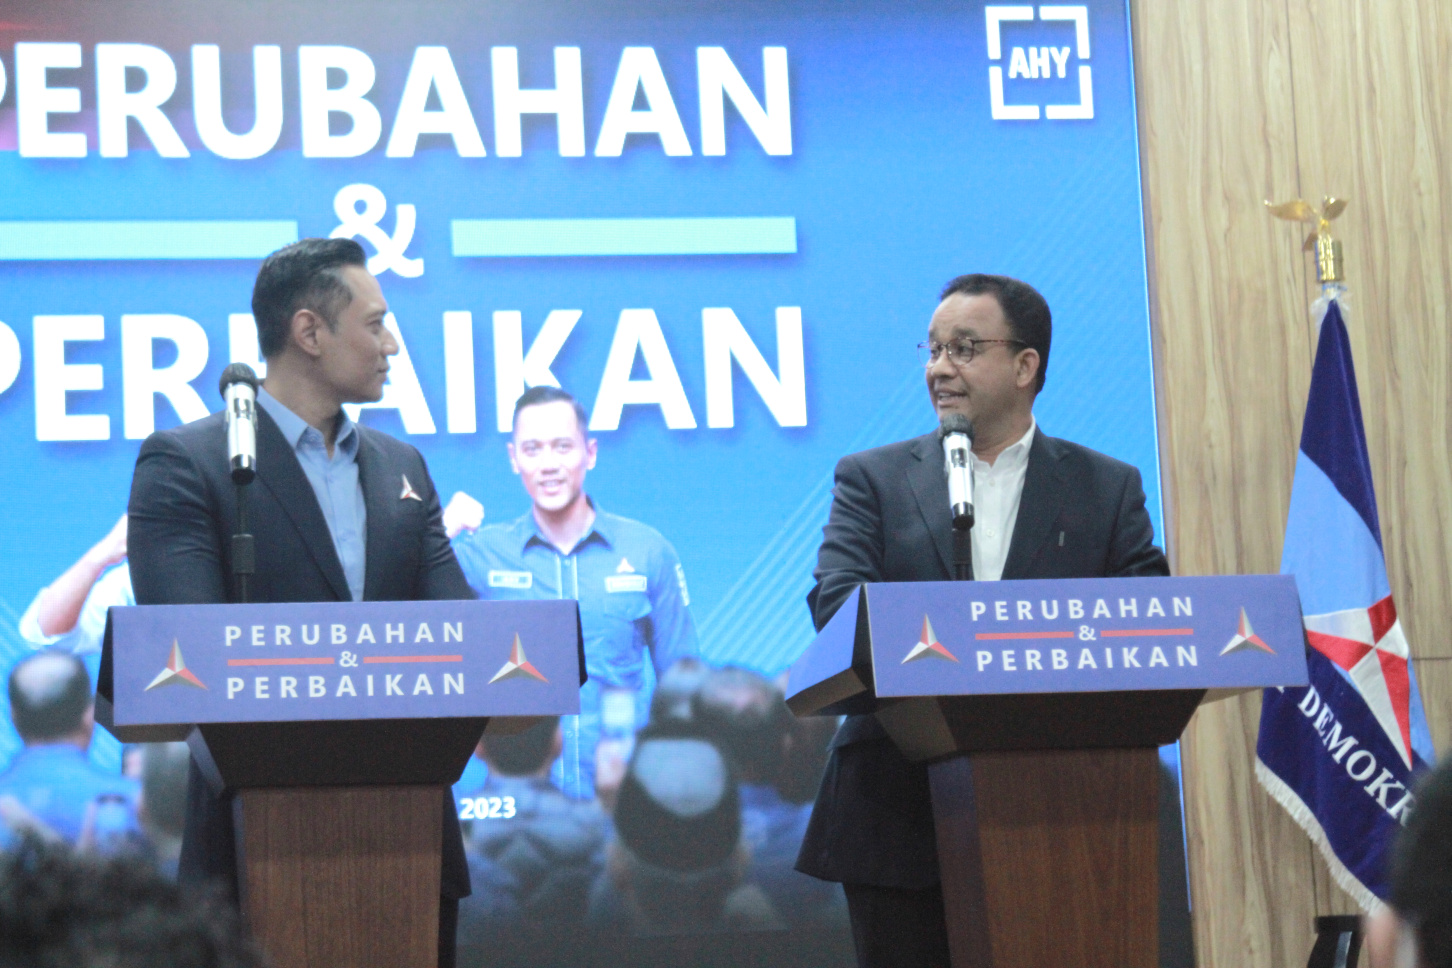 Ketua Umum Partai Demokrat Agus Harimurti Yudhoyono menyambut kedatangan Anies Baswedan di Kantor DPP Partai Demokrat dan memperkenalkan kepada Majelis Tinggi Partai Demokrat (Ashar/SinPo.id)